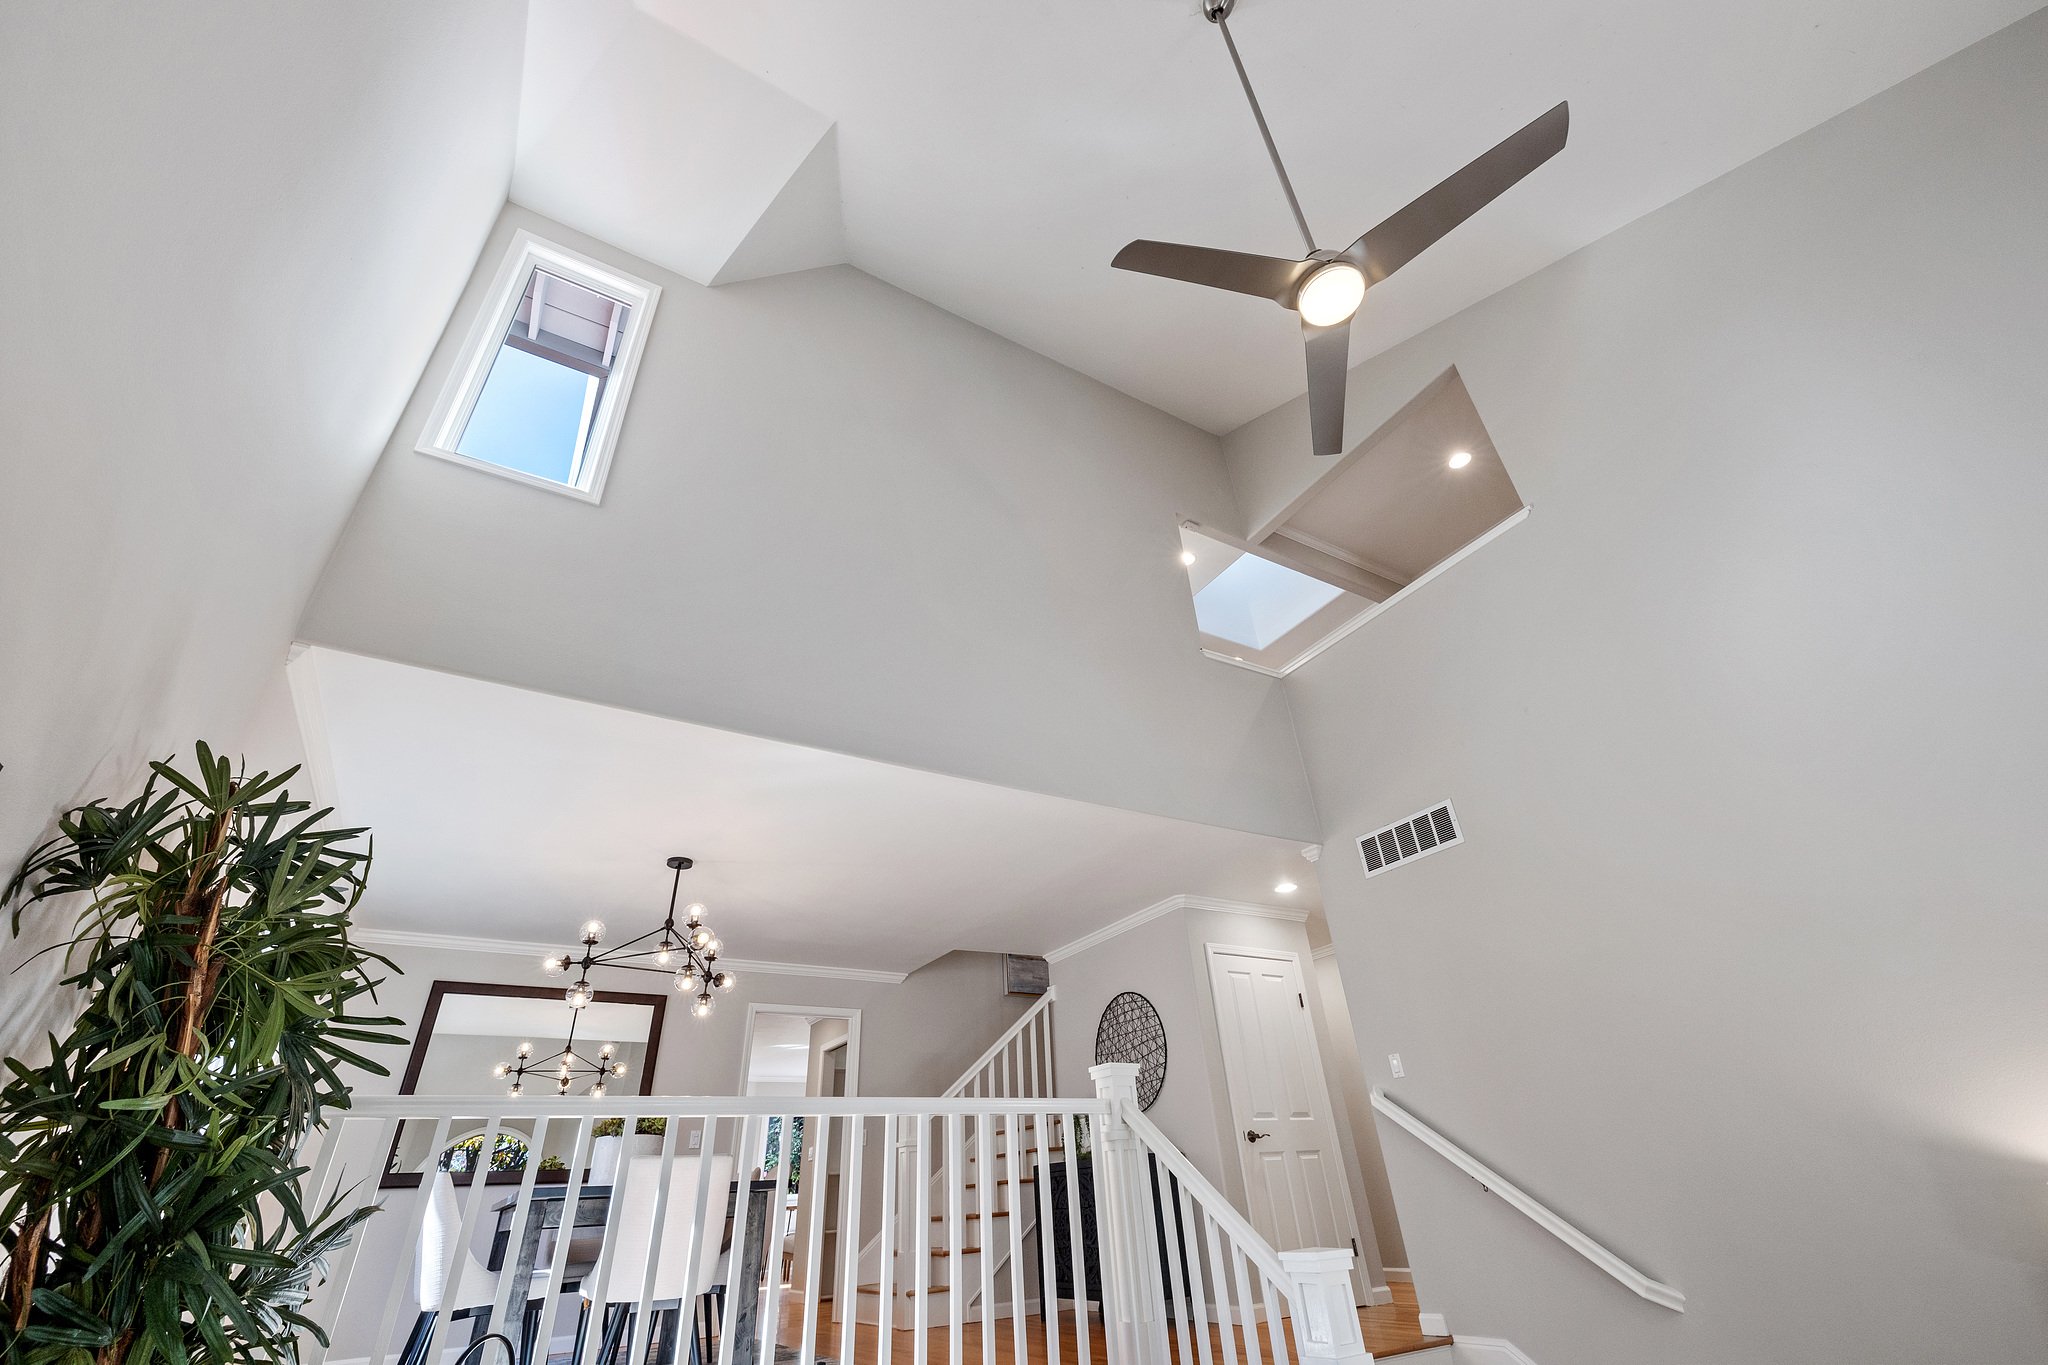 Livingroom ceiling462-myrtle-street.60950.p3k.019.web.jpg